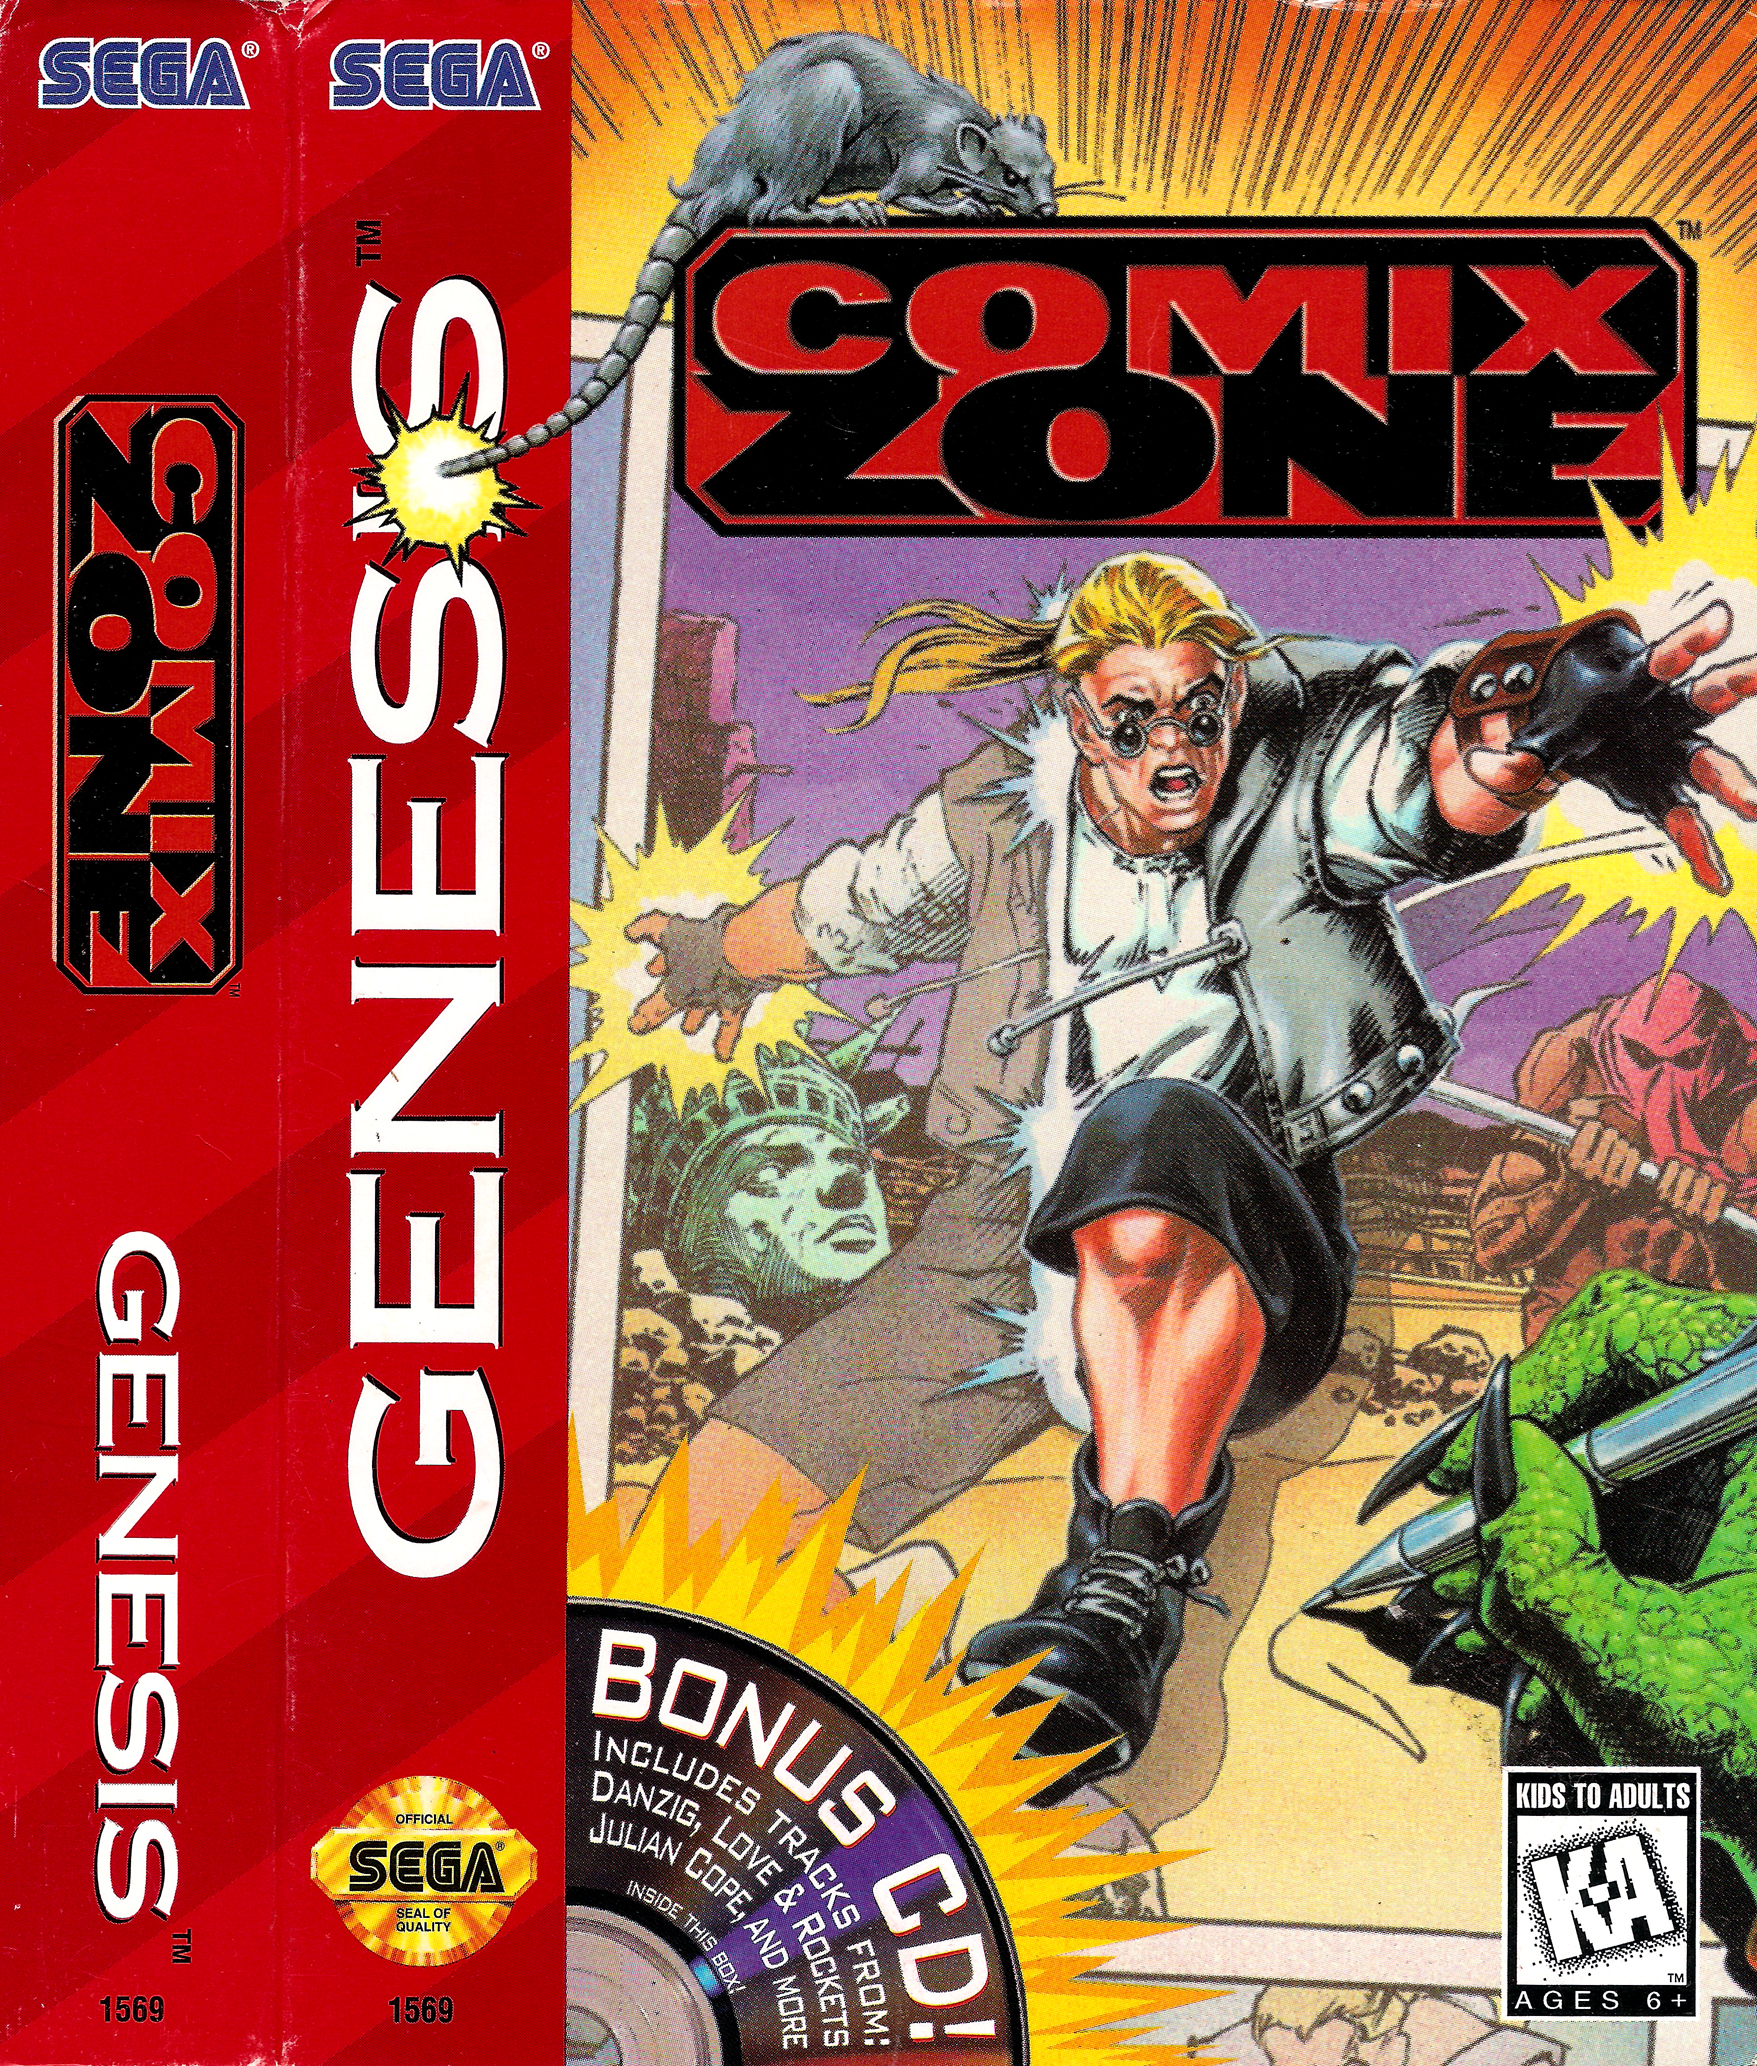 Игра на сеге зона. Comix Zone Sega картридж. Комикс зон сега обложка. Sega игра комикс. Игра на сеге комикс зона.